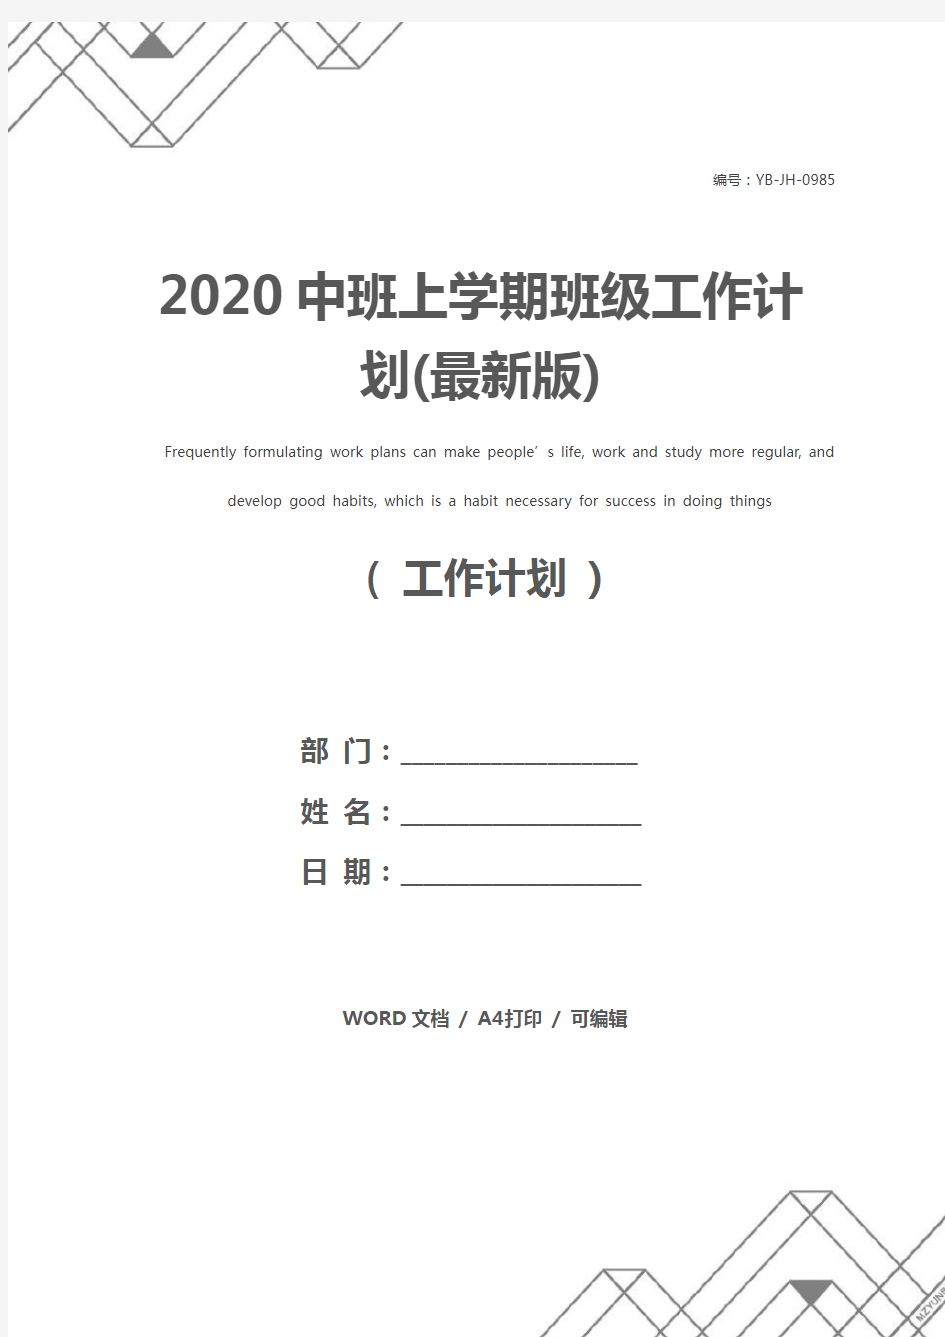 2020中班上学期班级工作计划(最新版)